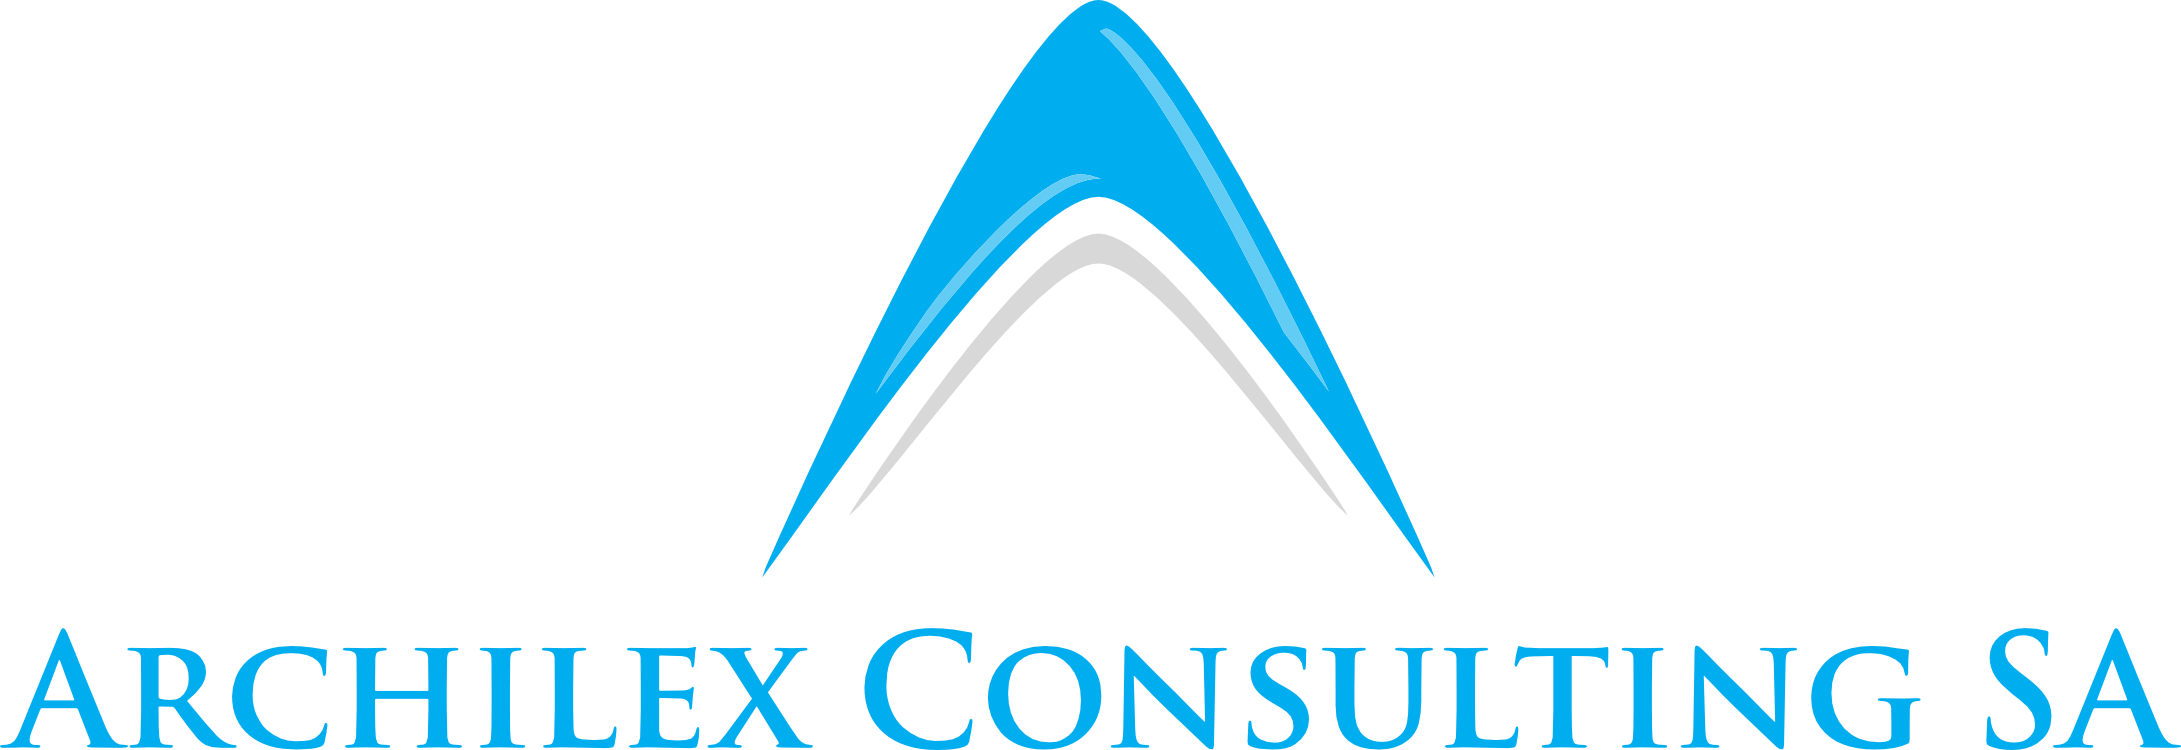 Archilex Consulting SA